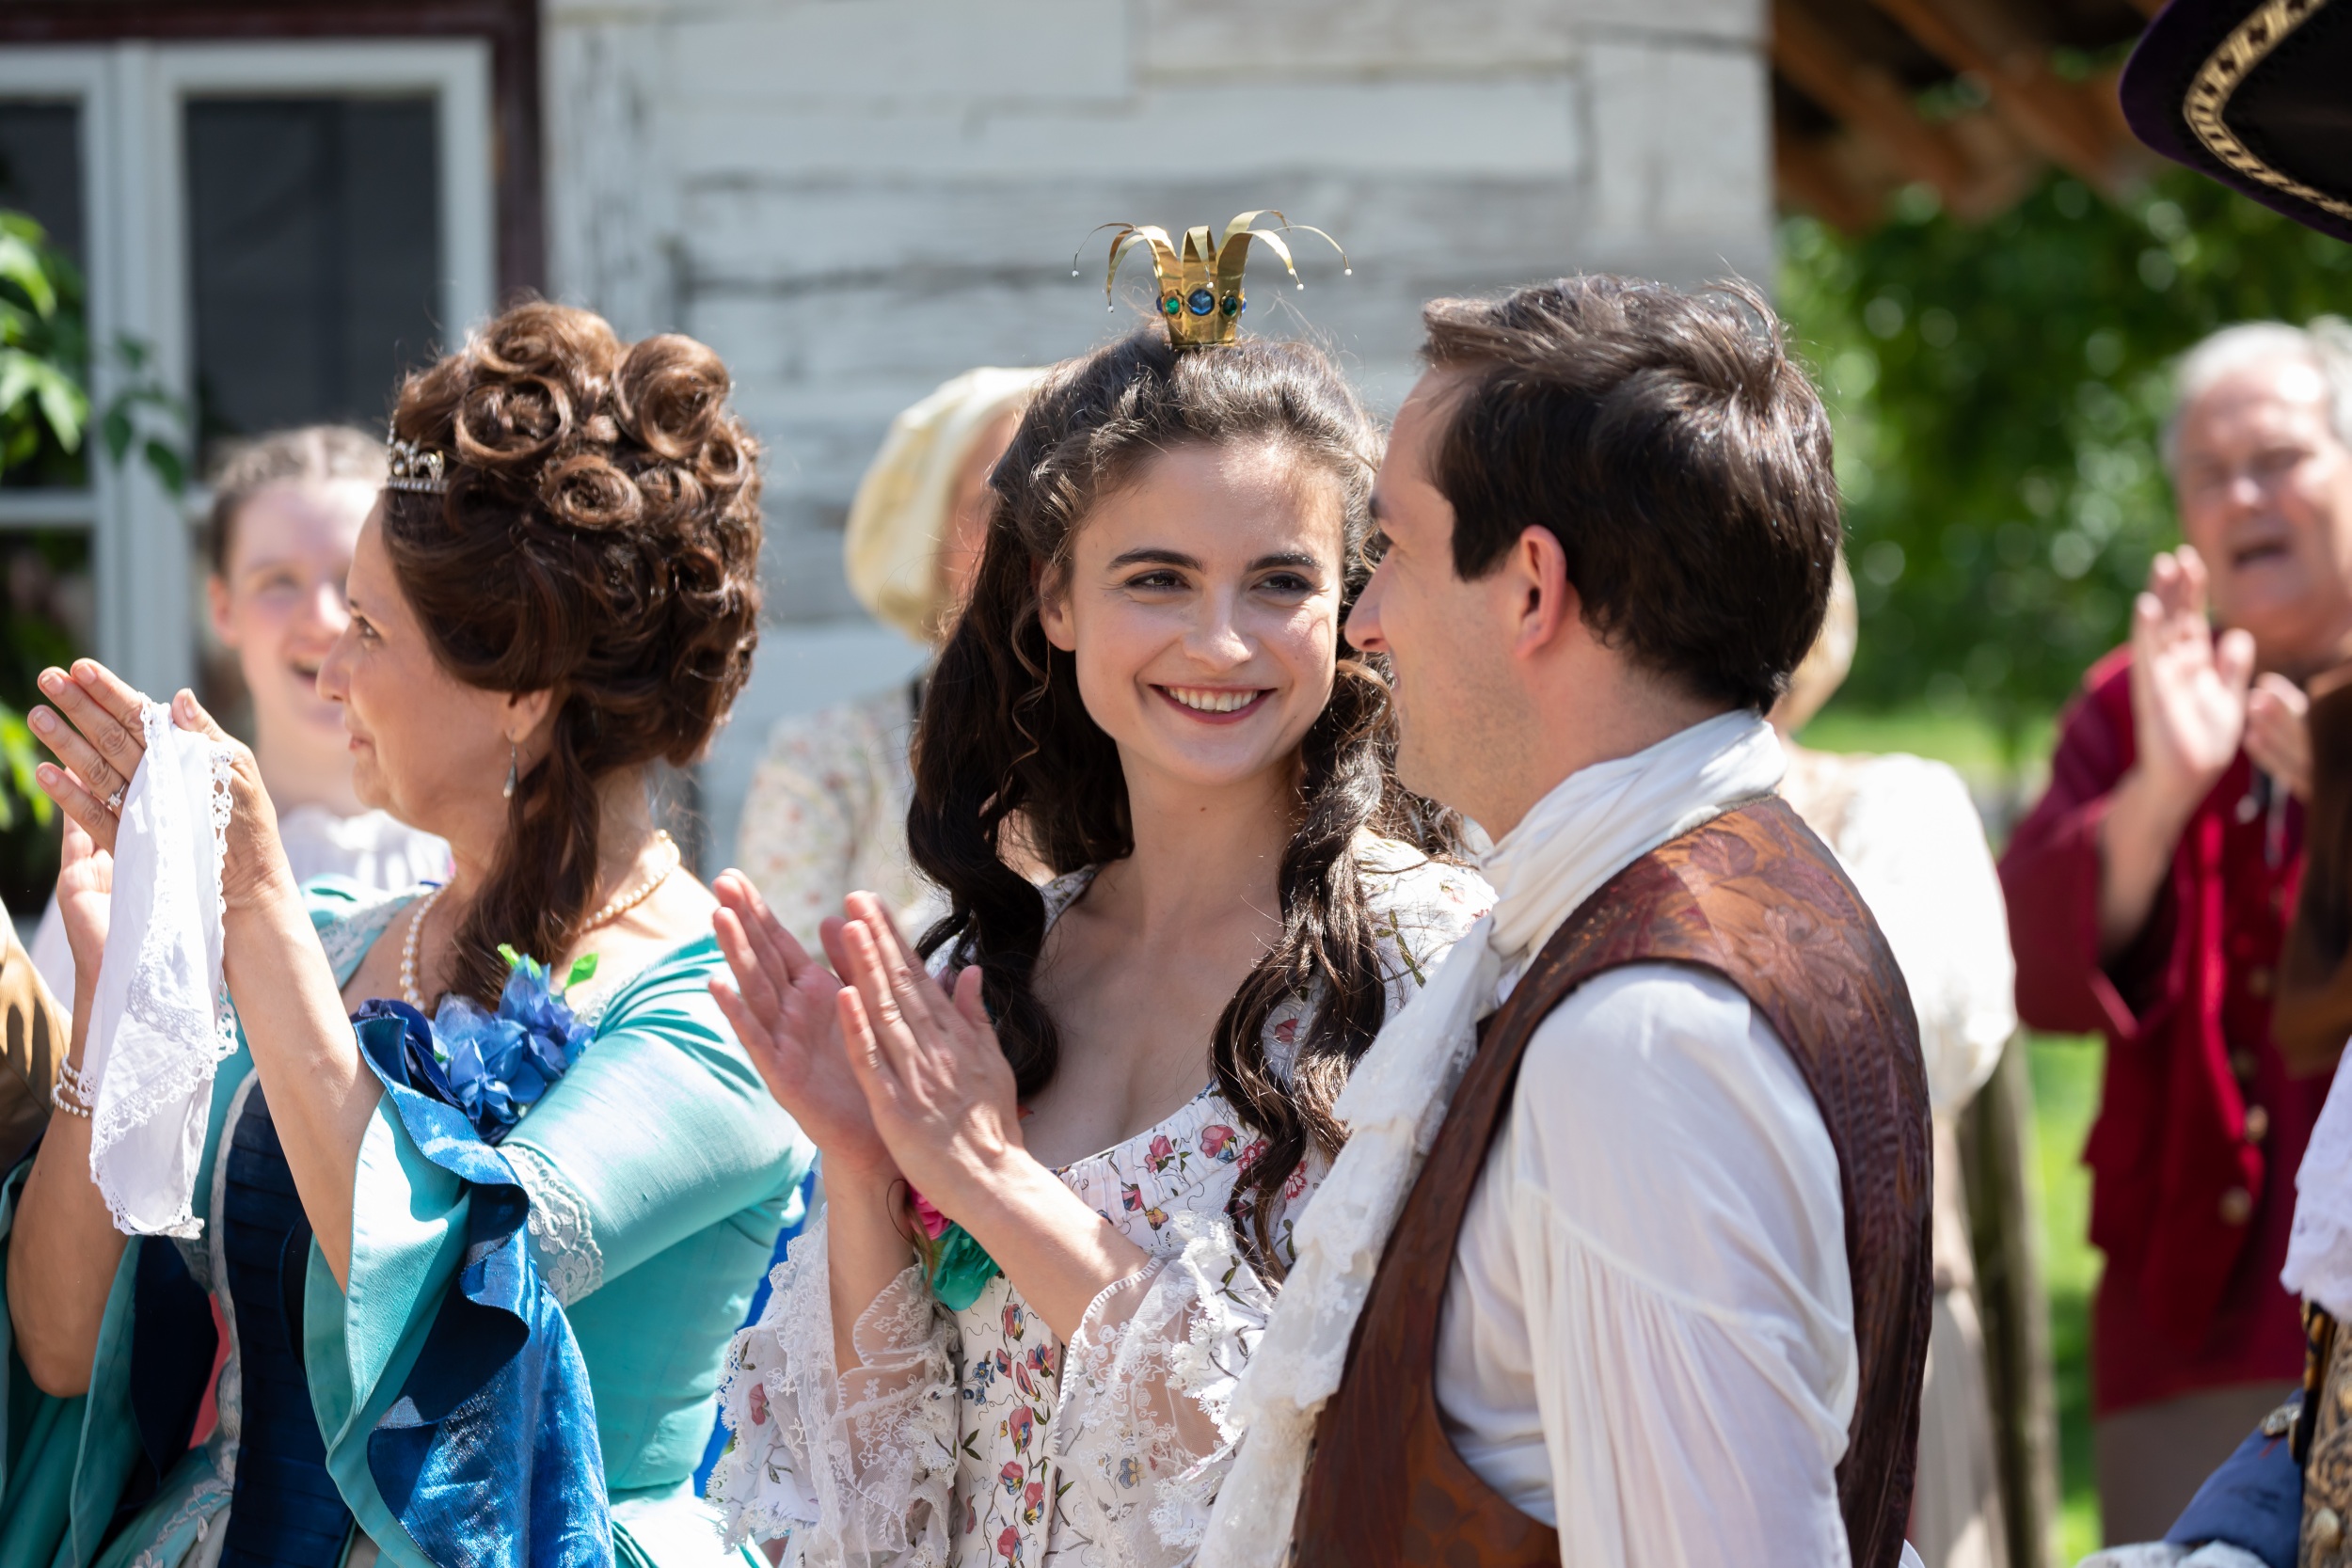 Natáčení pohádky s názvem Princezna a půl království ve skanzenu Betlém v Hlinsku 11. června 2019.